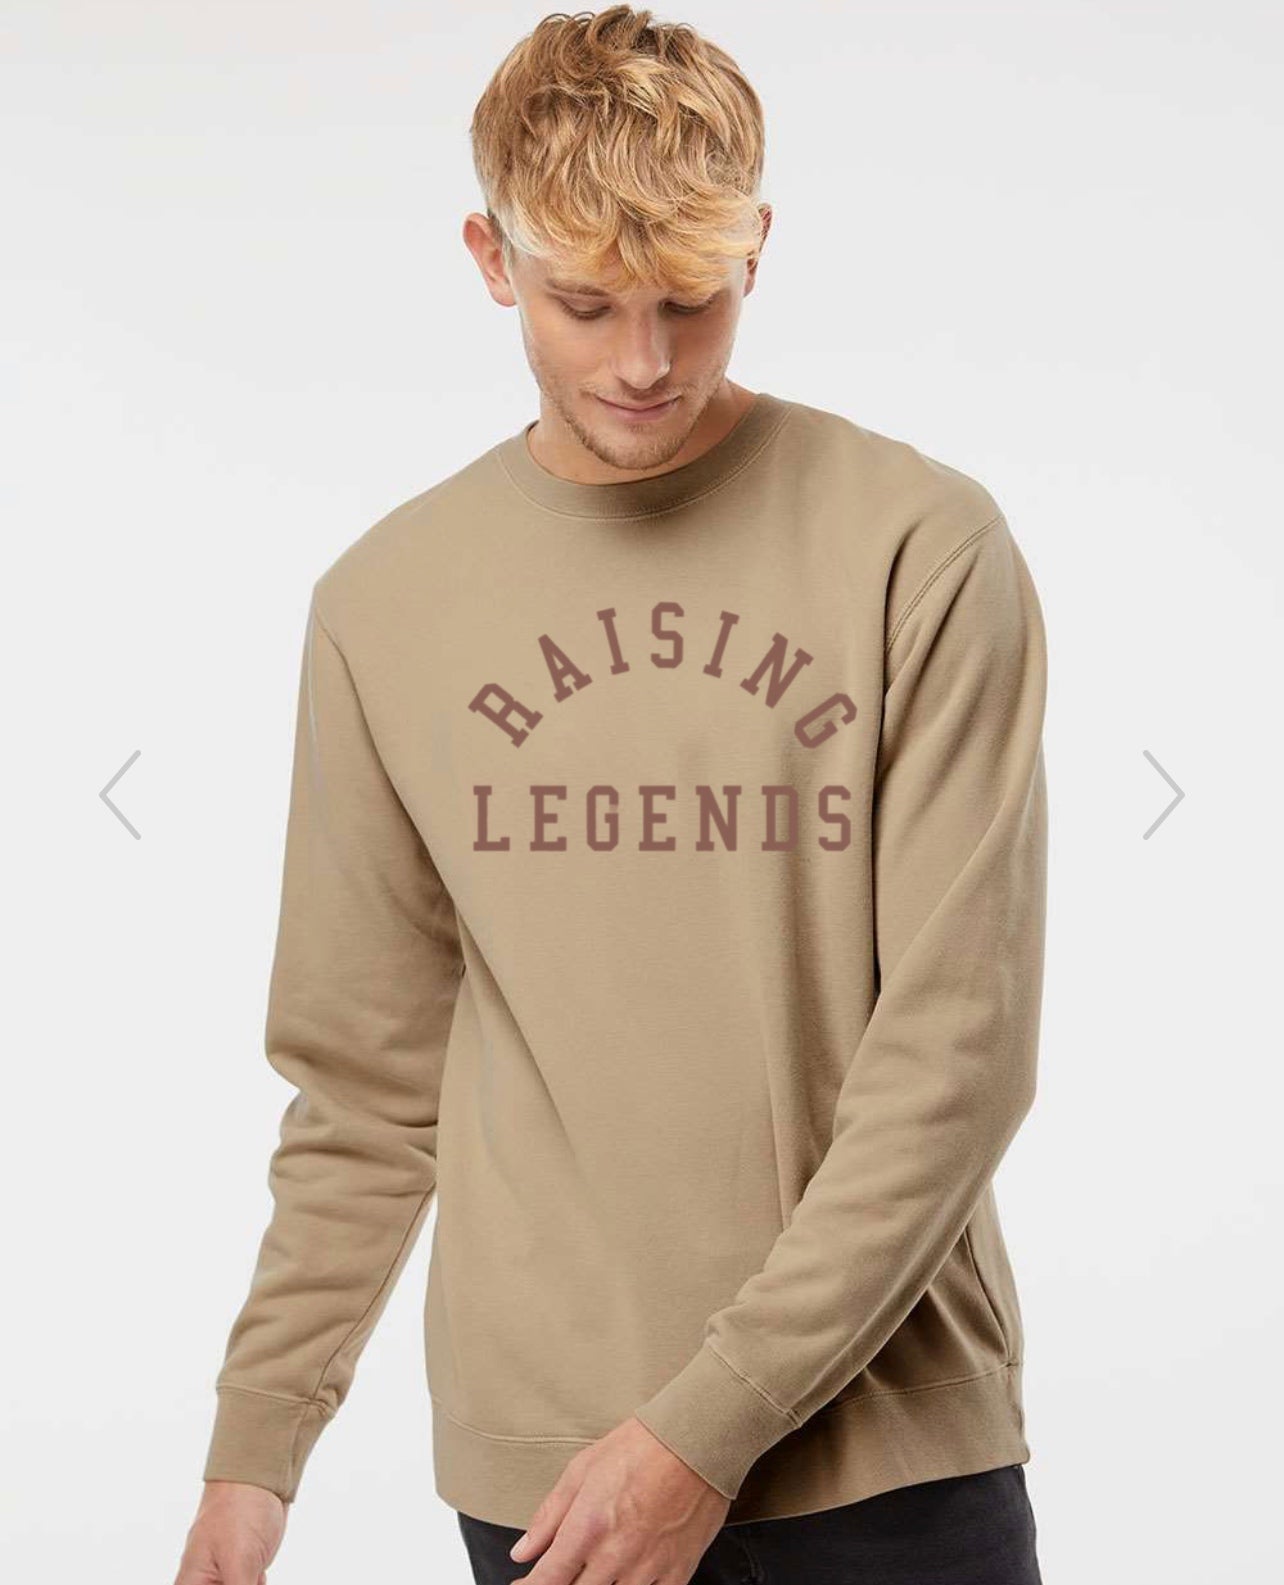 Raising Legends crew neck sweatshirt